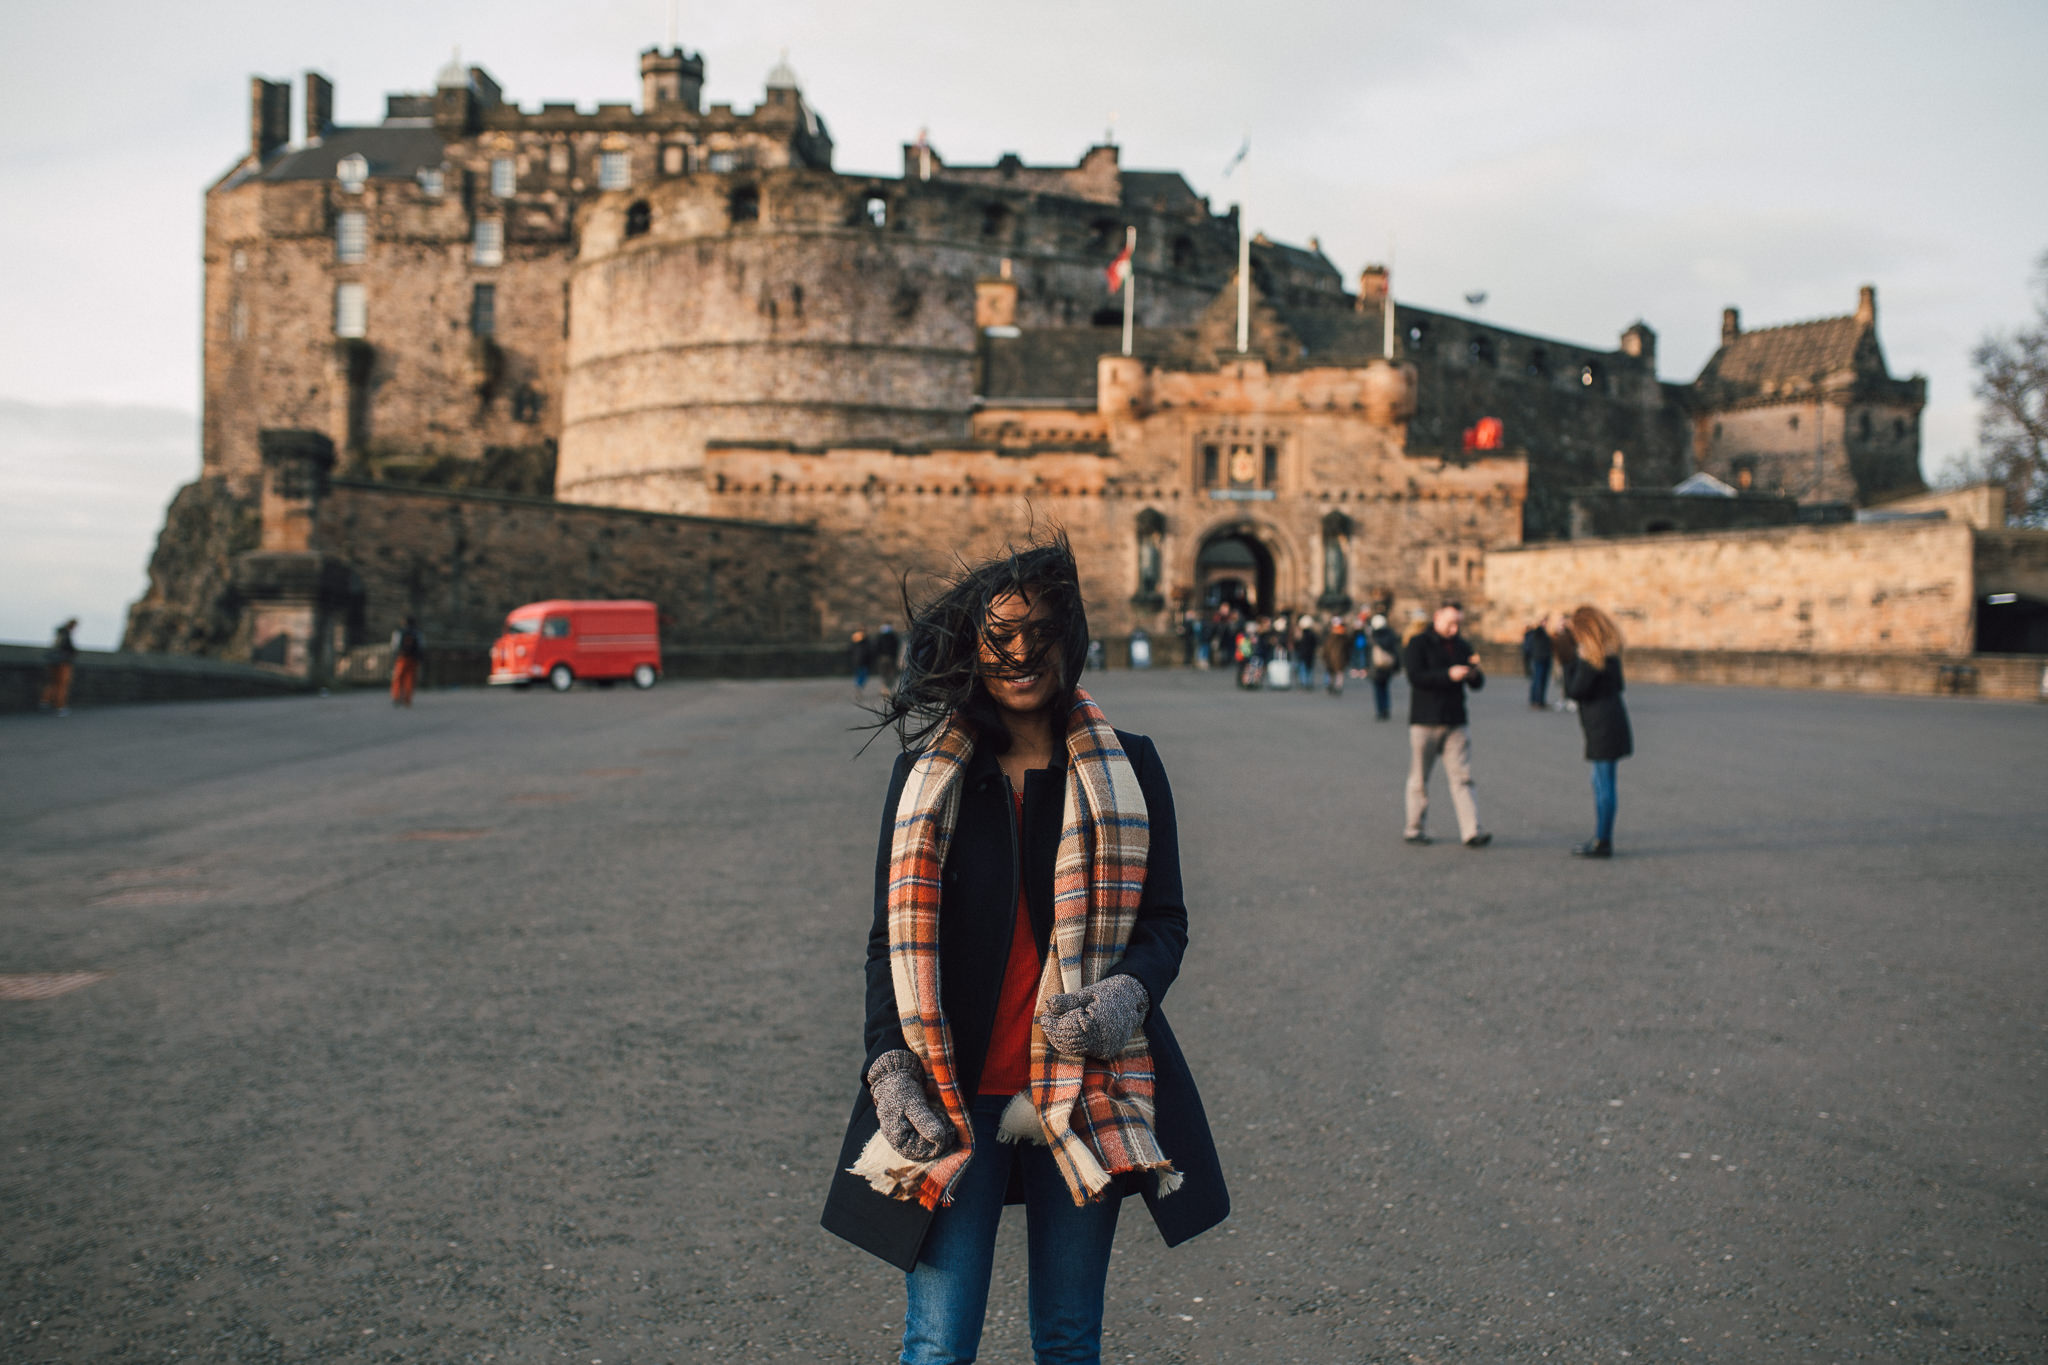   Edinburgh castle ft. Wind  